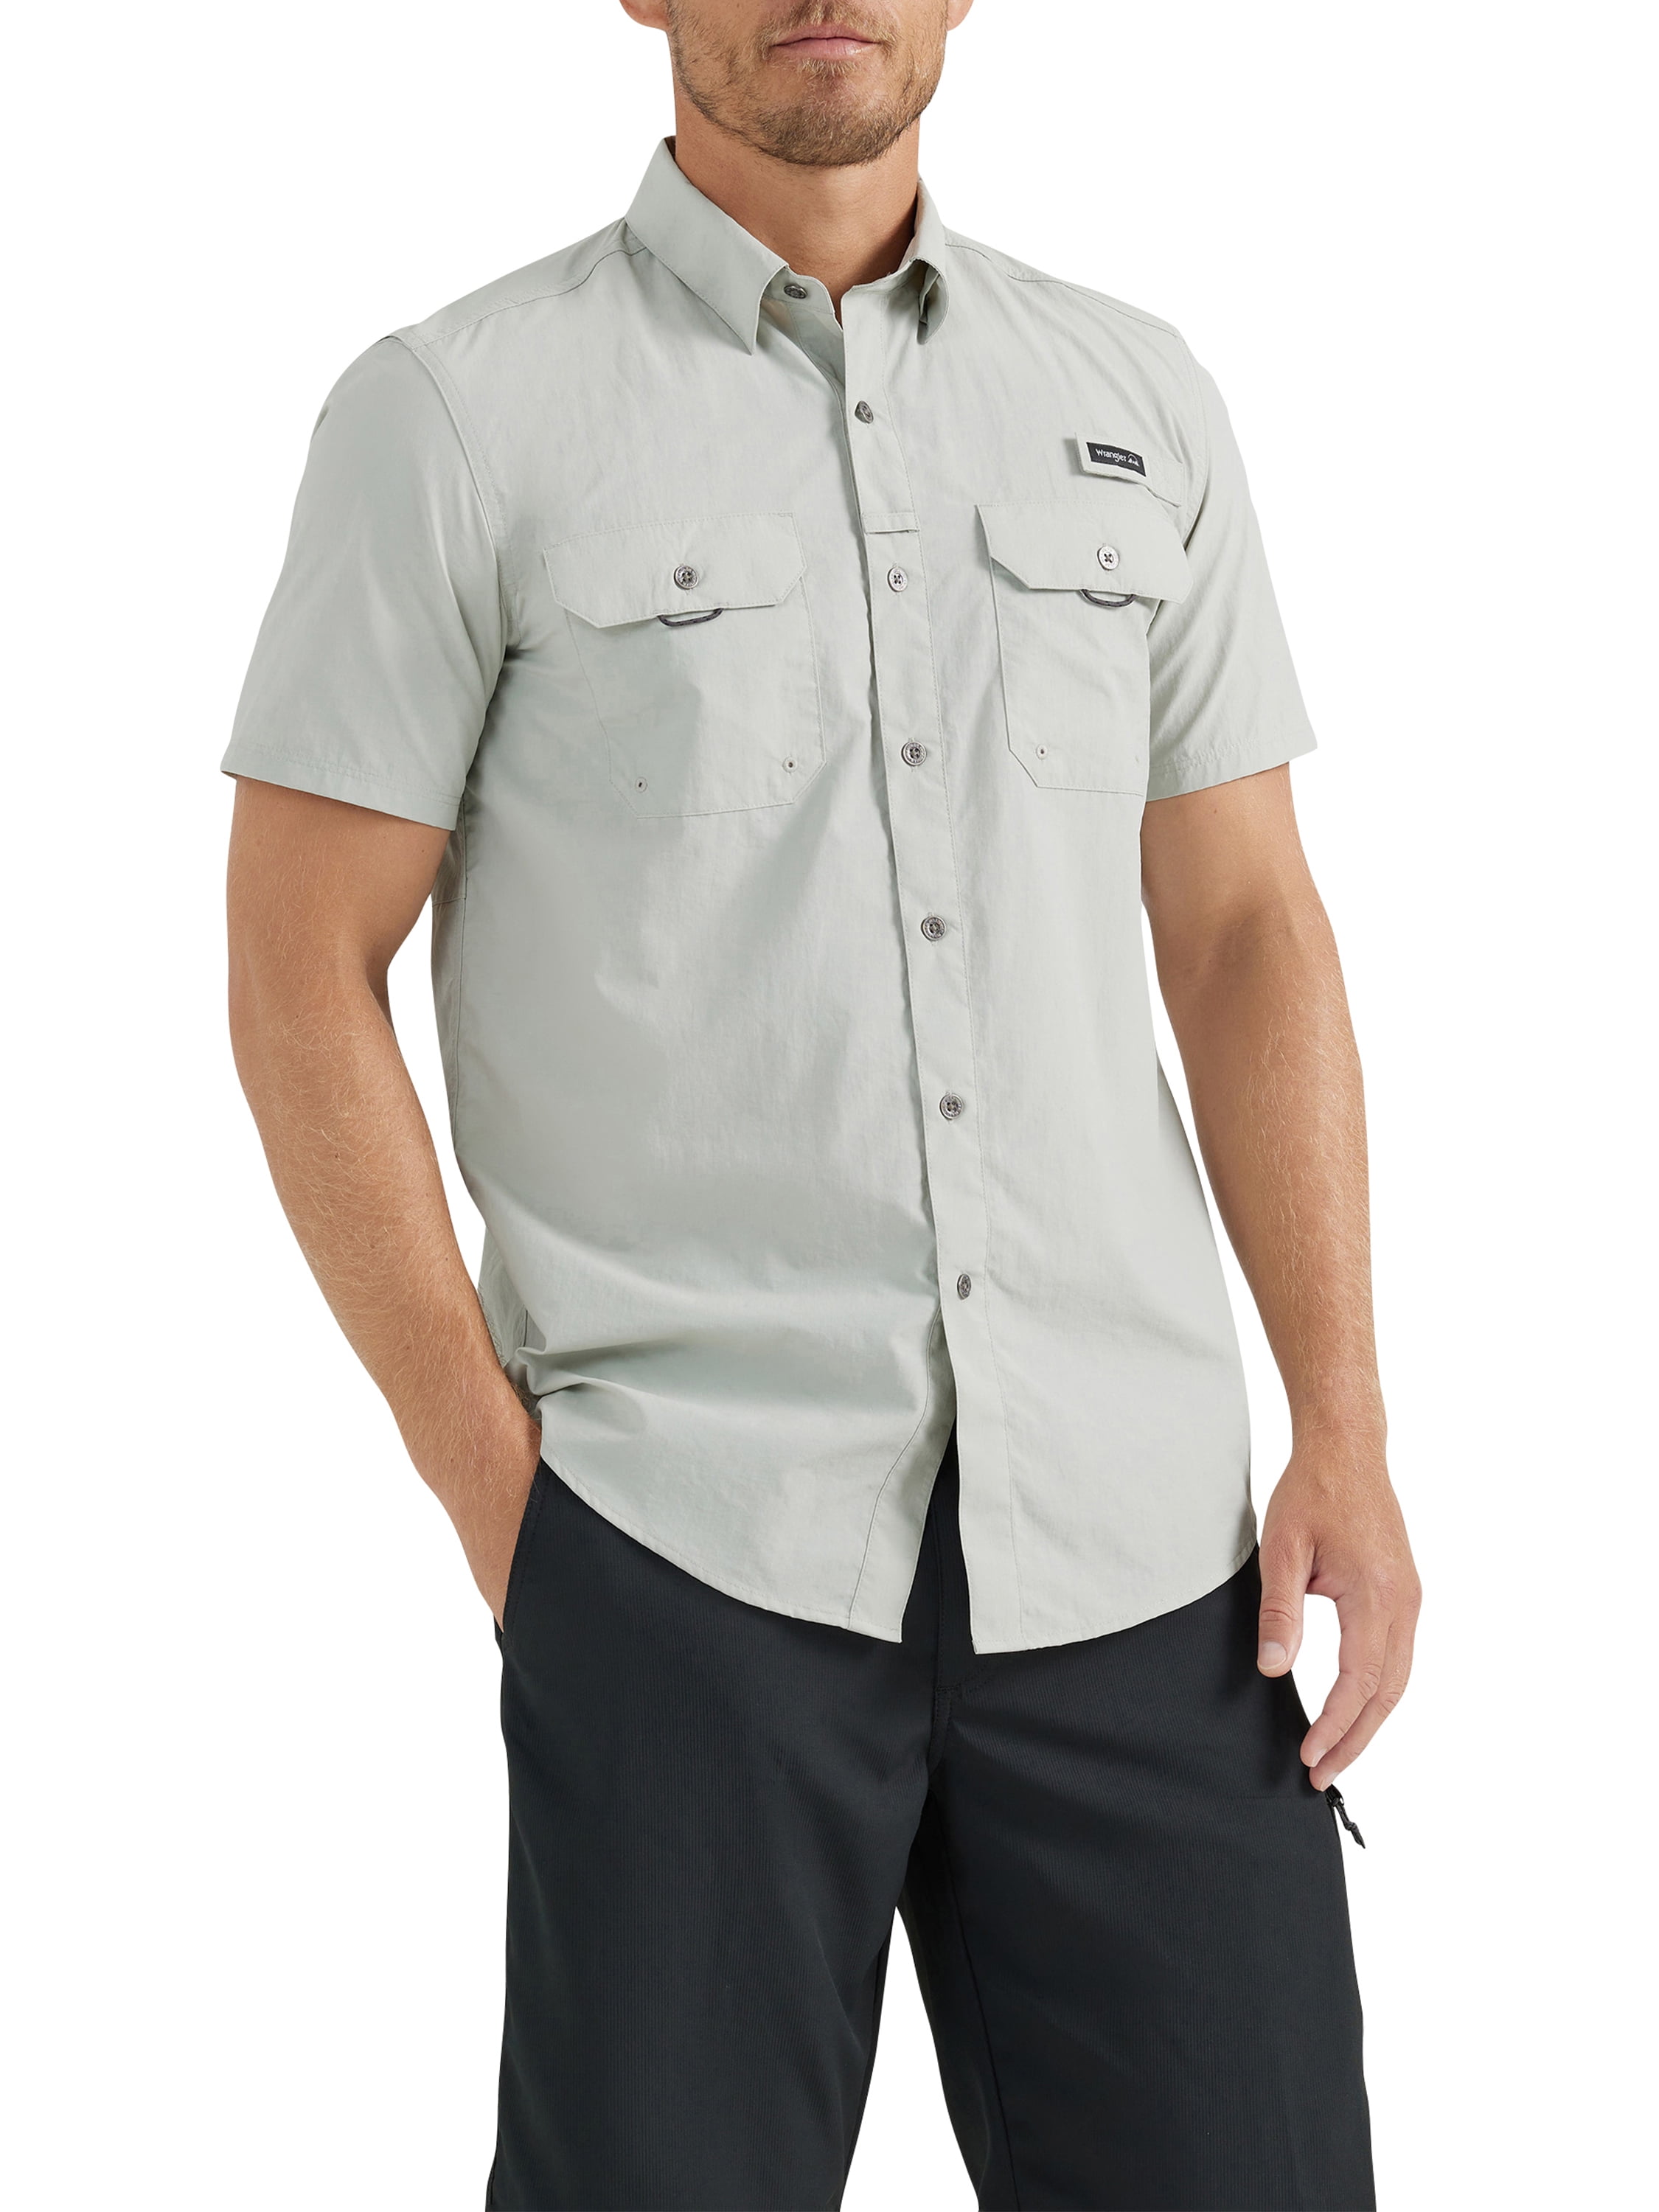 Men's Grey Short Sleeve Fishing Shirt